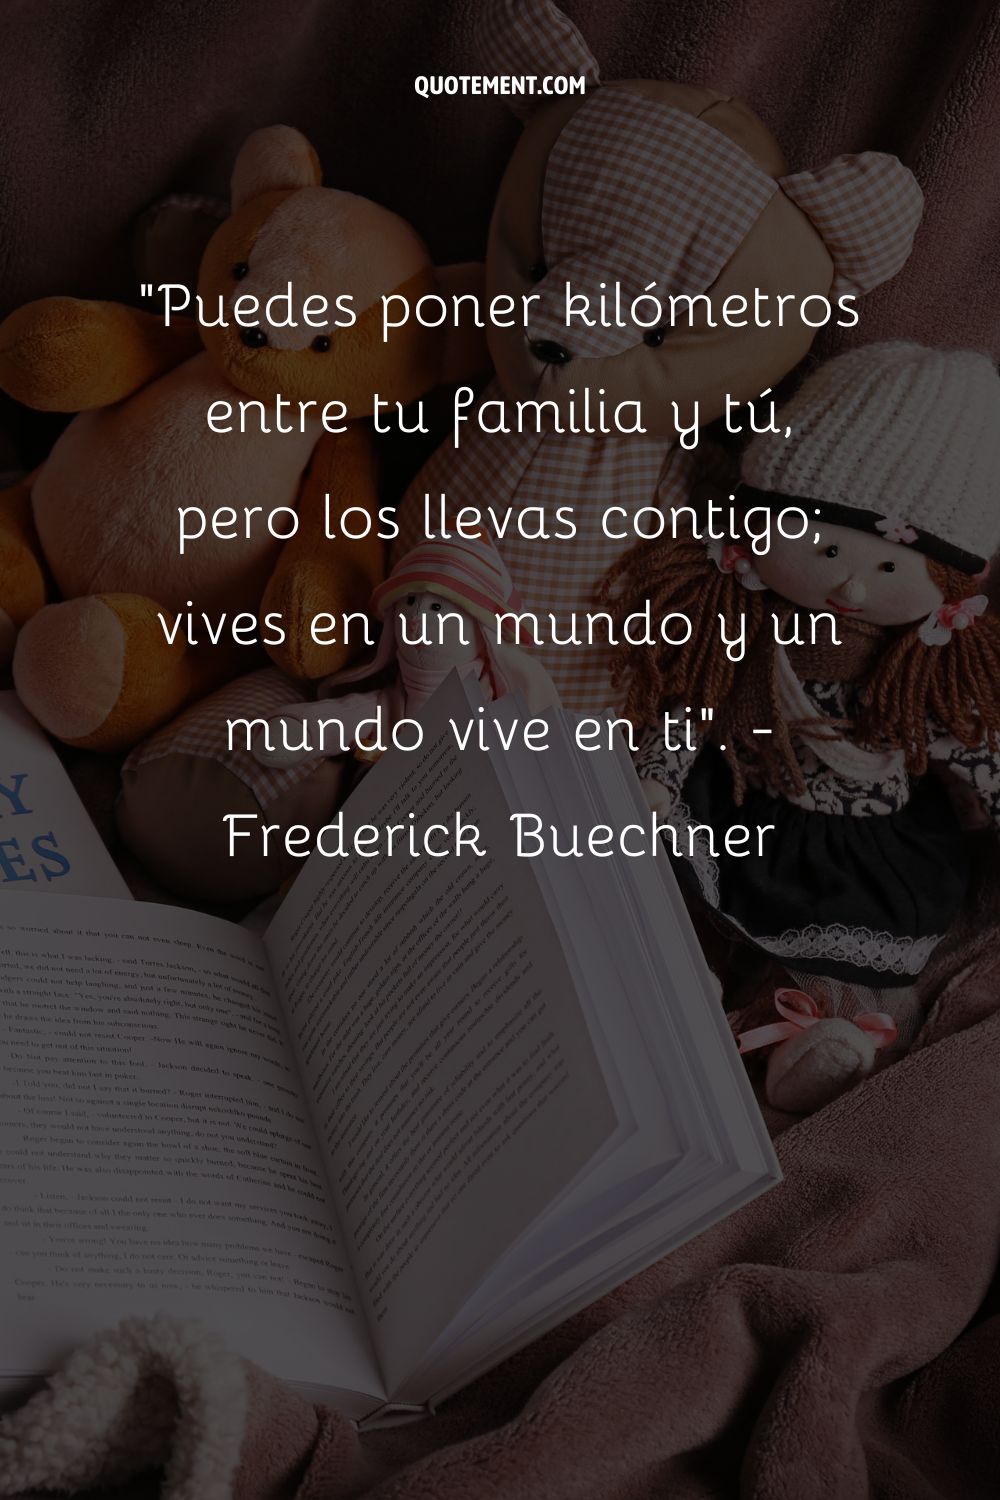 Puedes poner kilómetros entre tú y tu familia, pero los llevas contigo; vives en un mundo y un mundo vive en ti. - Frederick Buechner